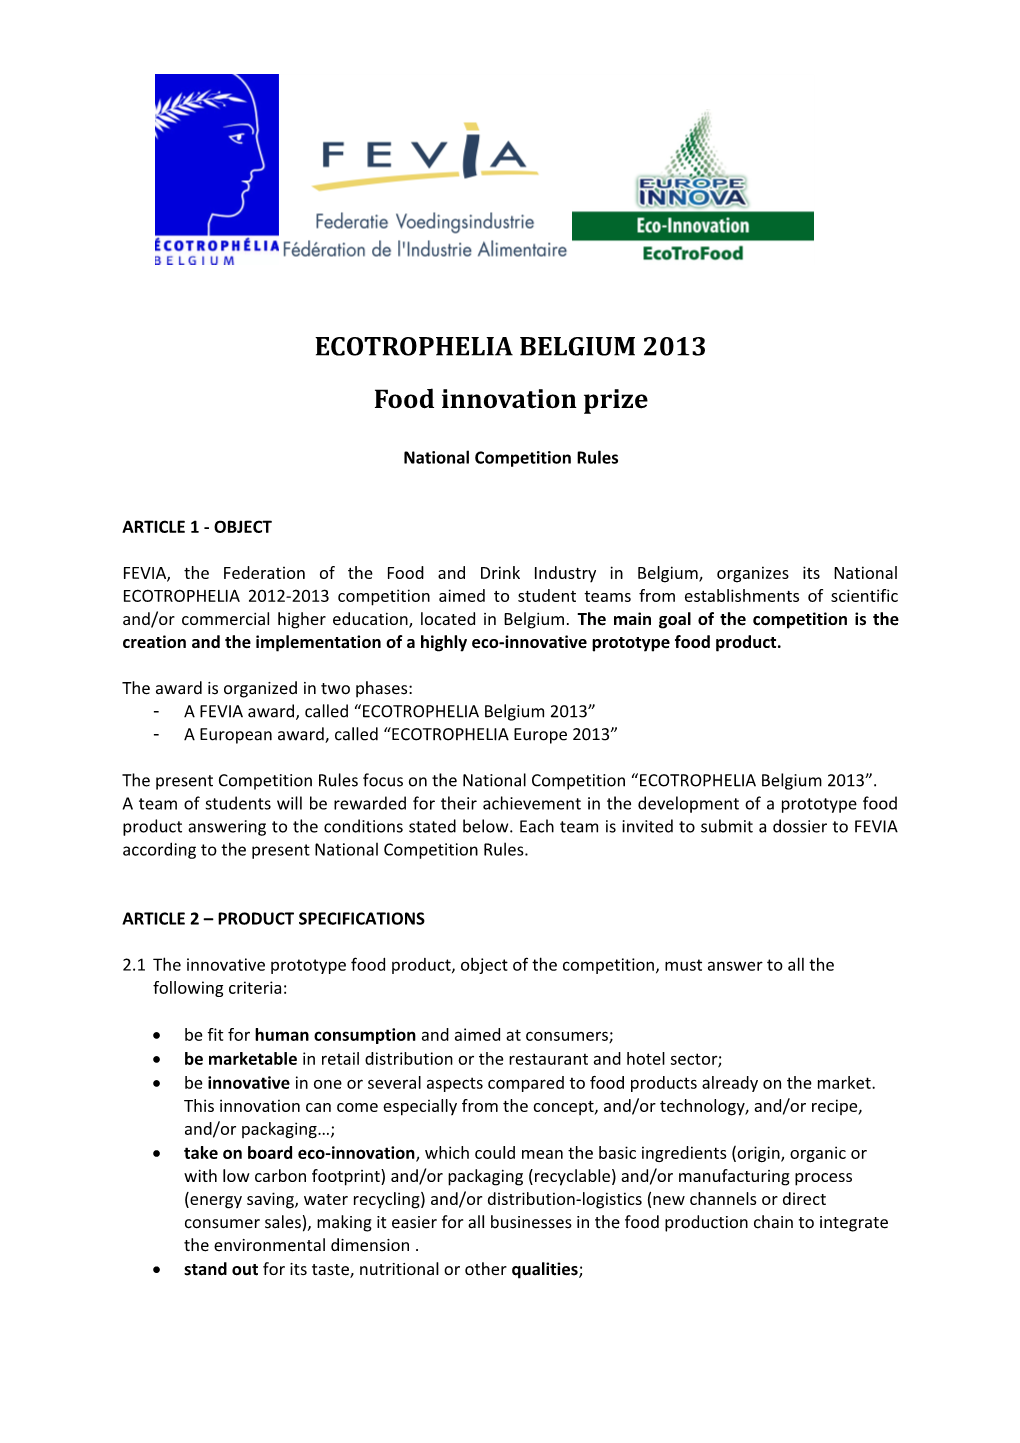 Food Innovation Prize